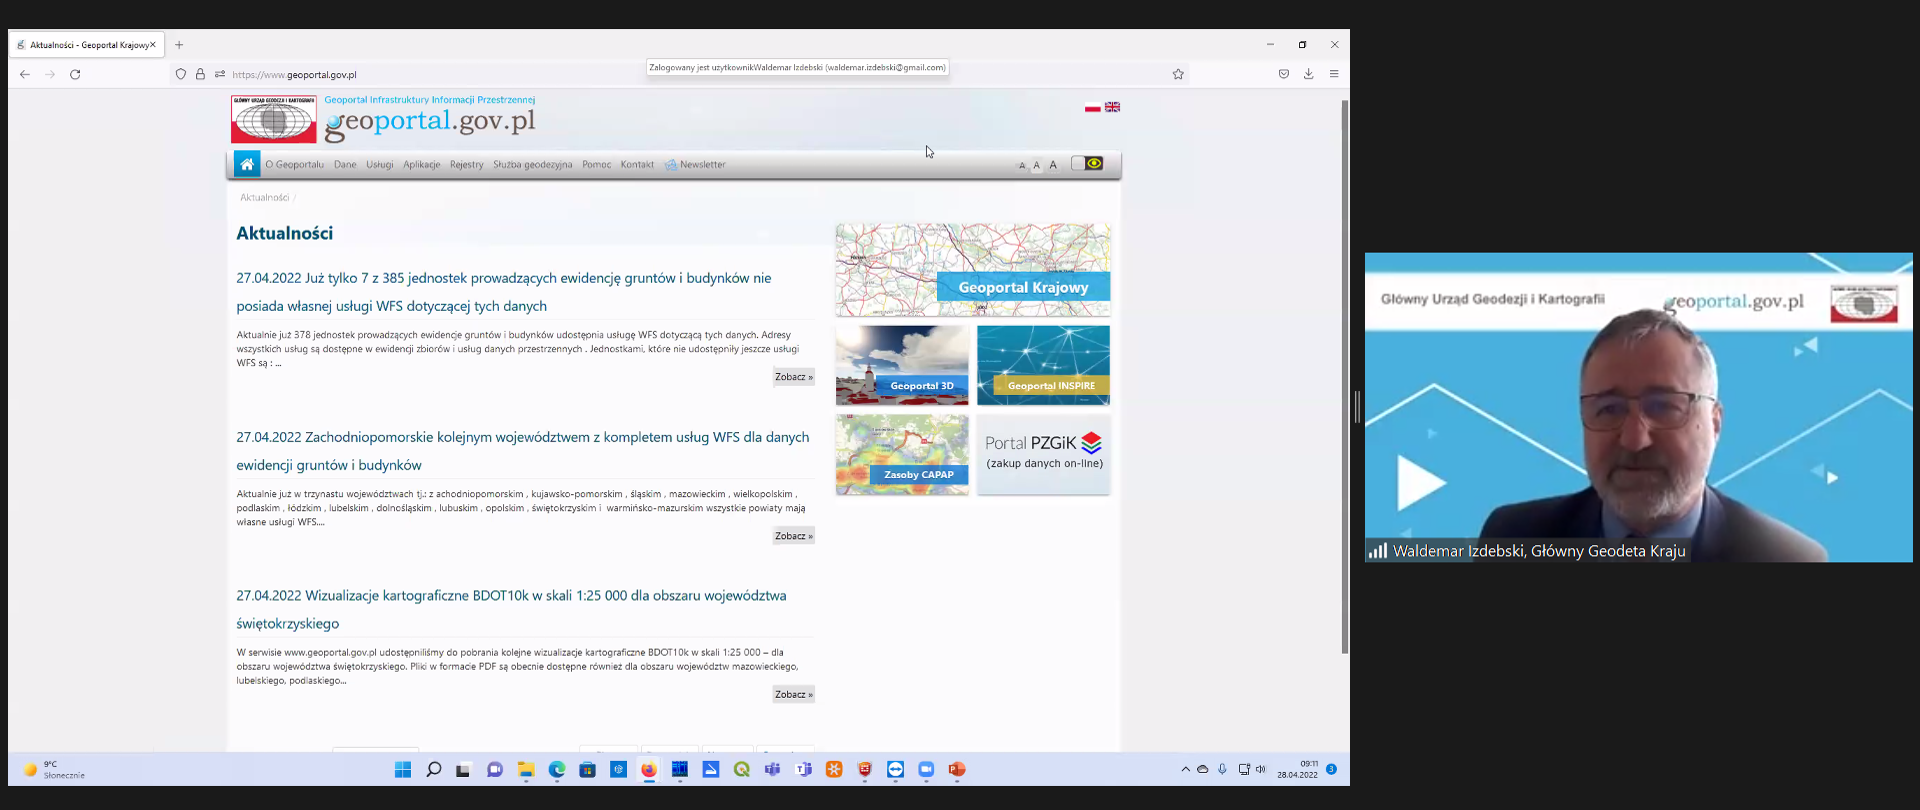 Zrzut ekranu z programu ZOOM. Po lewej widok na stronę geoportal.gov.pl, a po prawej rozpoczynający szkolenie Główny Geodeta Kraju - dr hab. inż. Waldemar Izdebski.